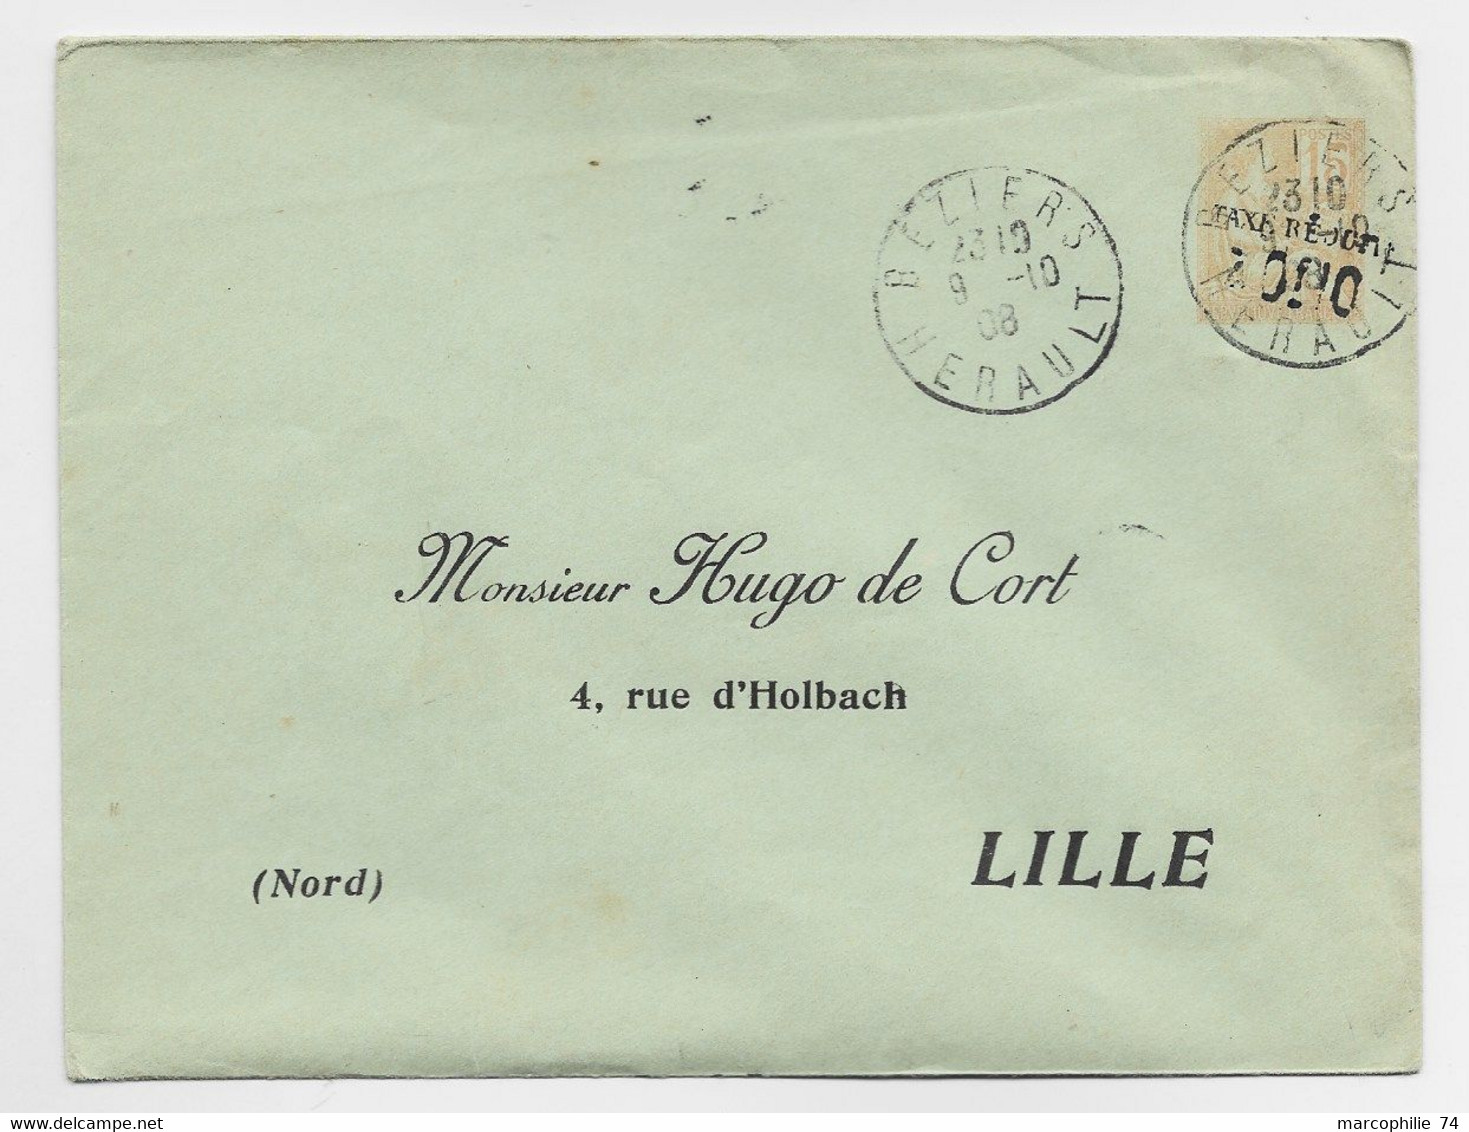 FRANCE ENTIER 15C MOUCHON ORANGE TAXE REDUITE 0F10 ENVELOPPE REPIQUAGE HUGO DE CORT LILLE DAGUIN BEZIERS 1908 - Overprinted Covers (before 1995)